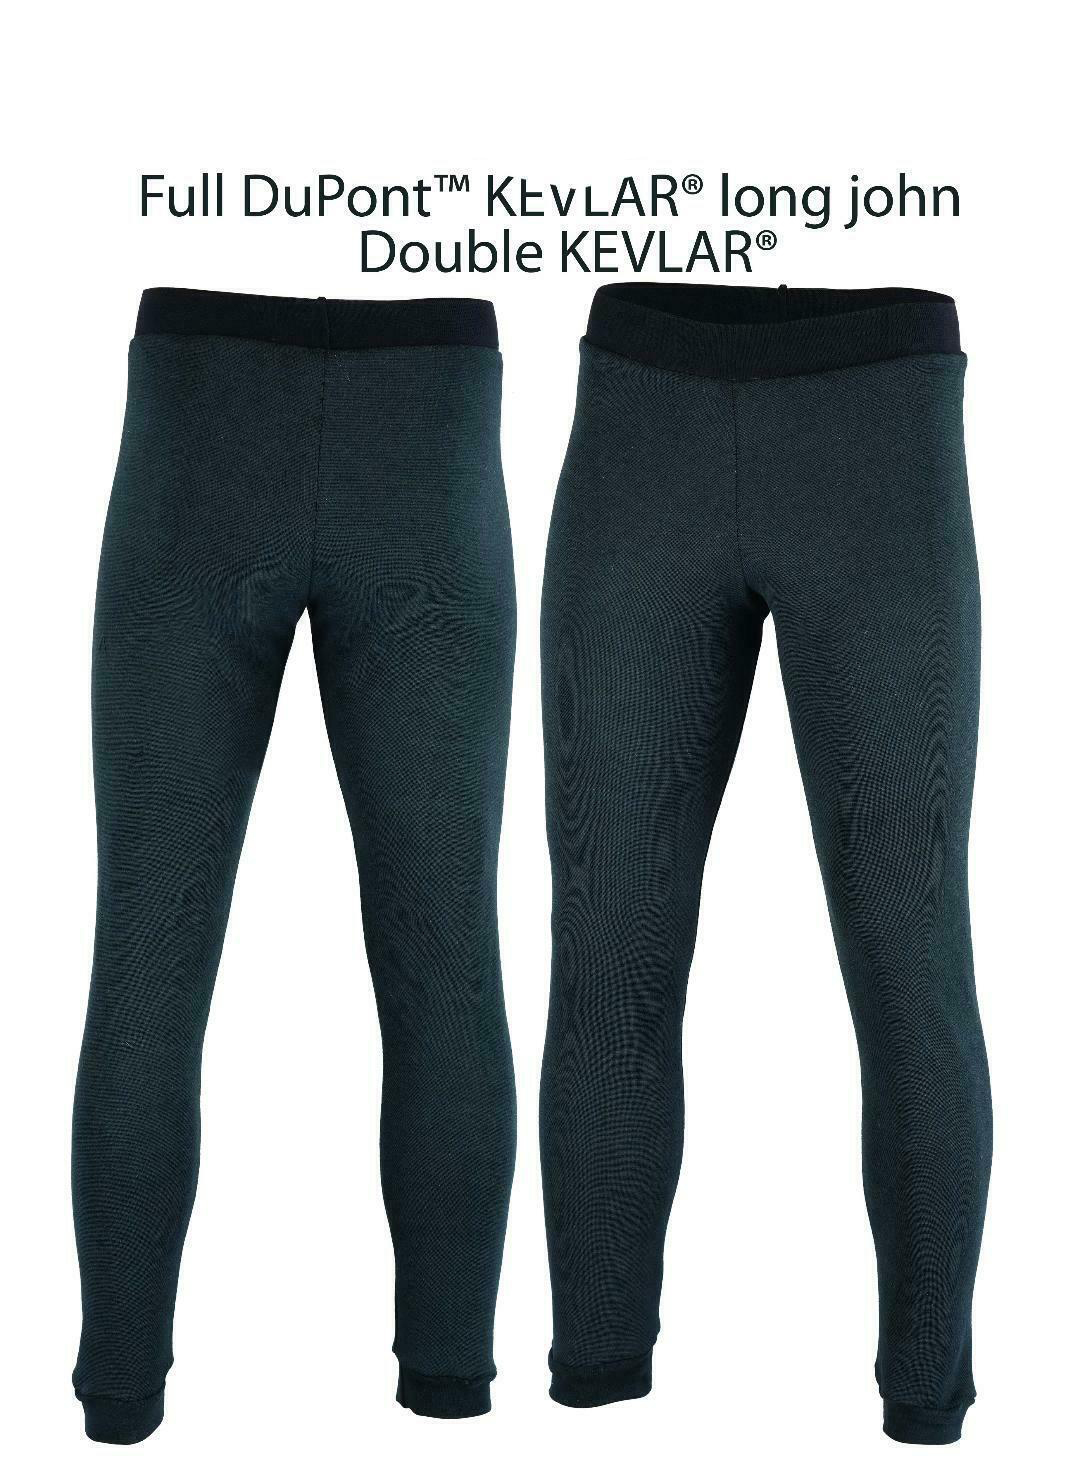 Pants made with DuPont ƒ?› Kevlar ?? fiber, Motorcycle Leggings for Men  made with DuPont ƒ?› Kevlar ?? fiber